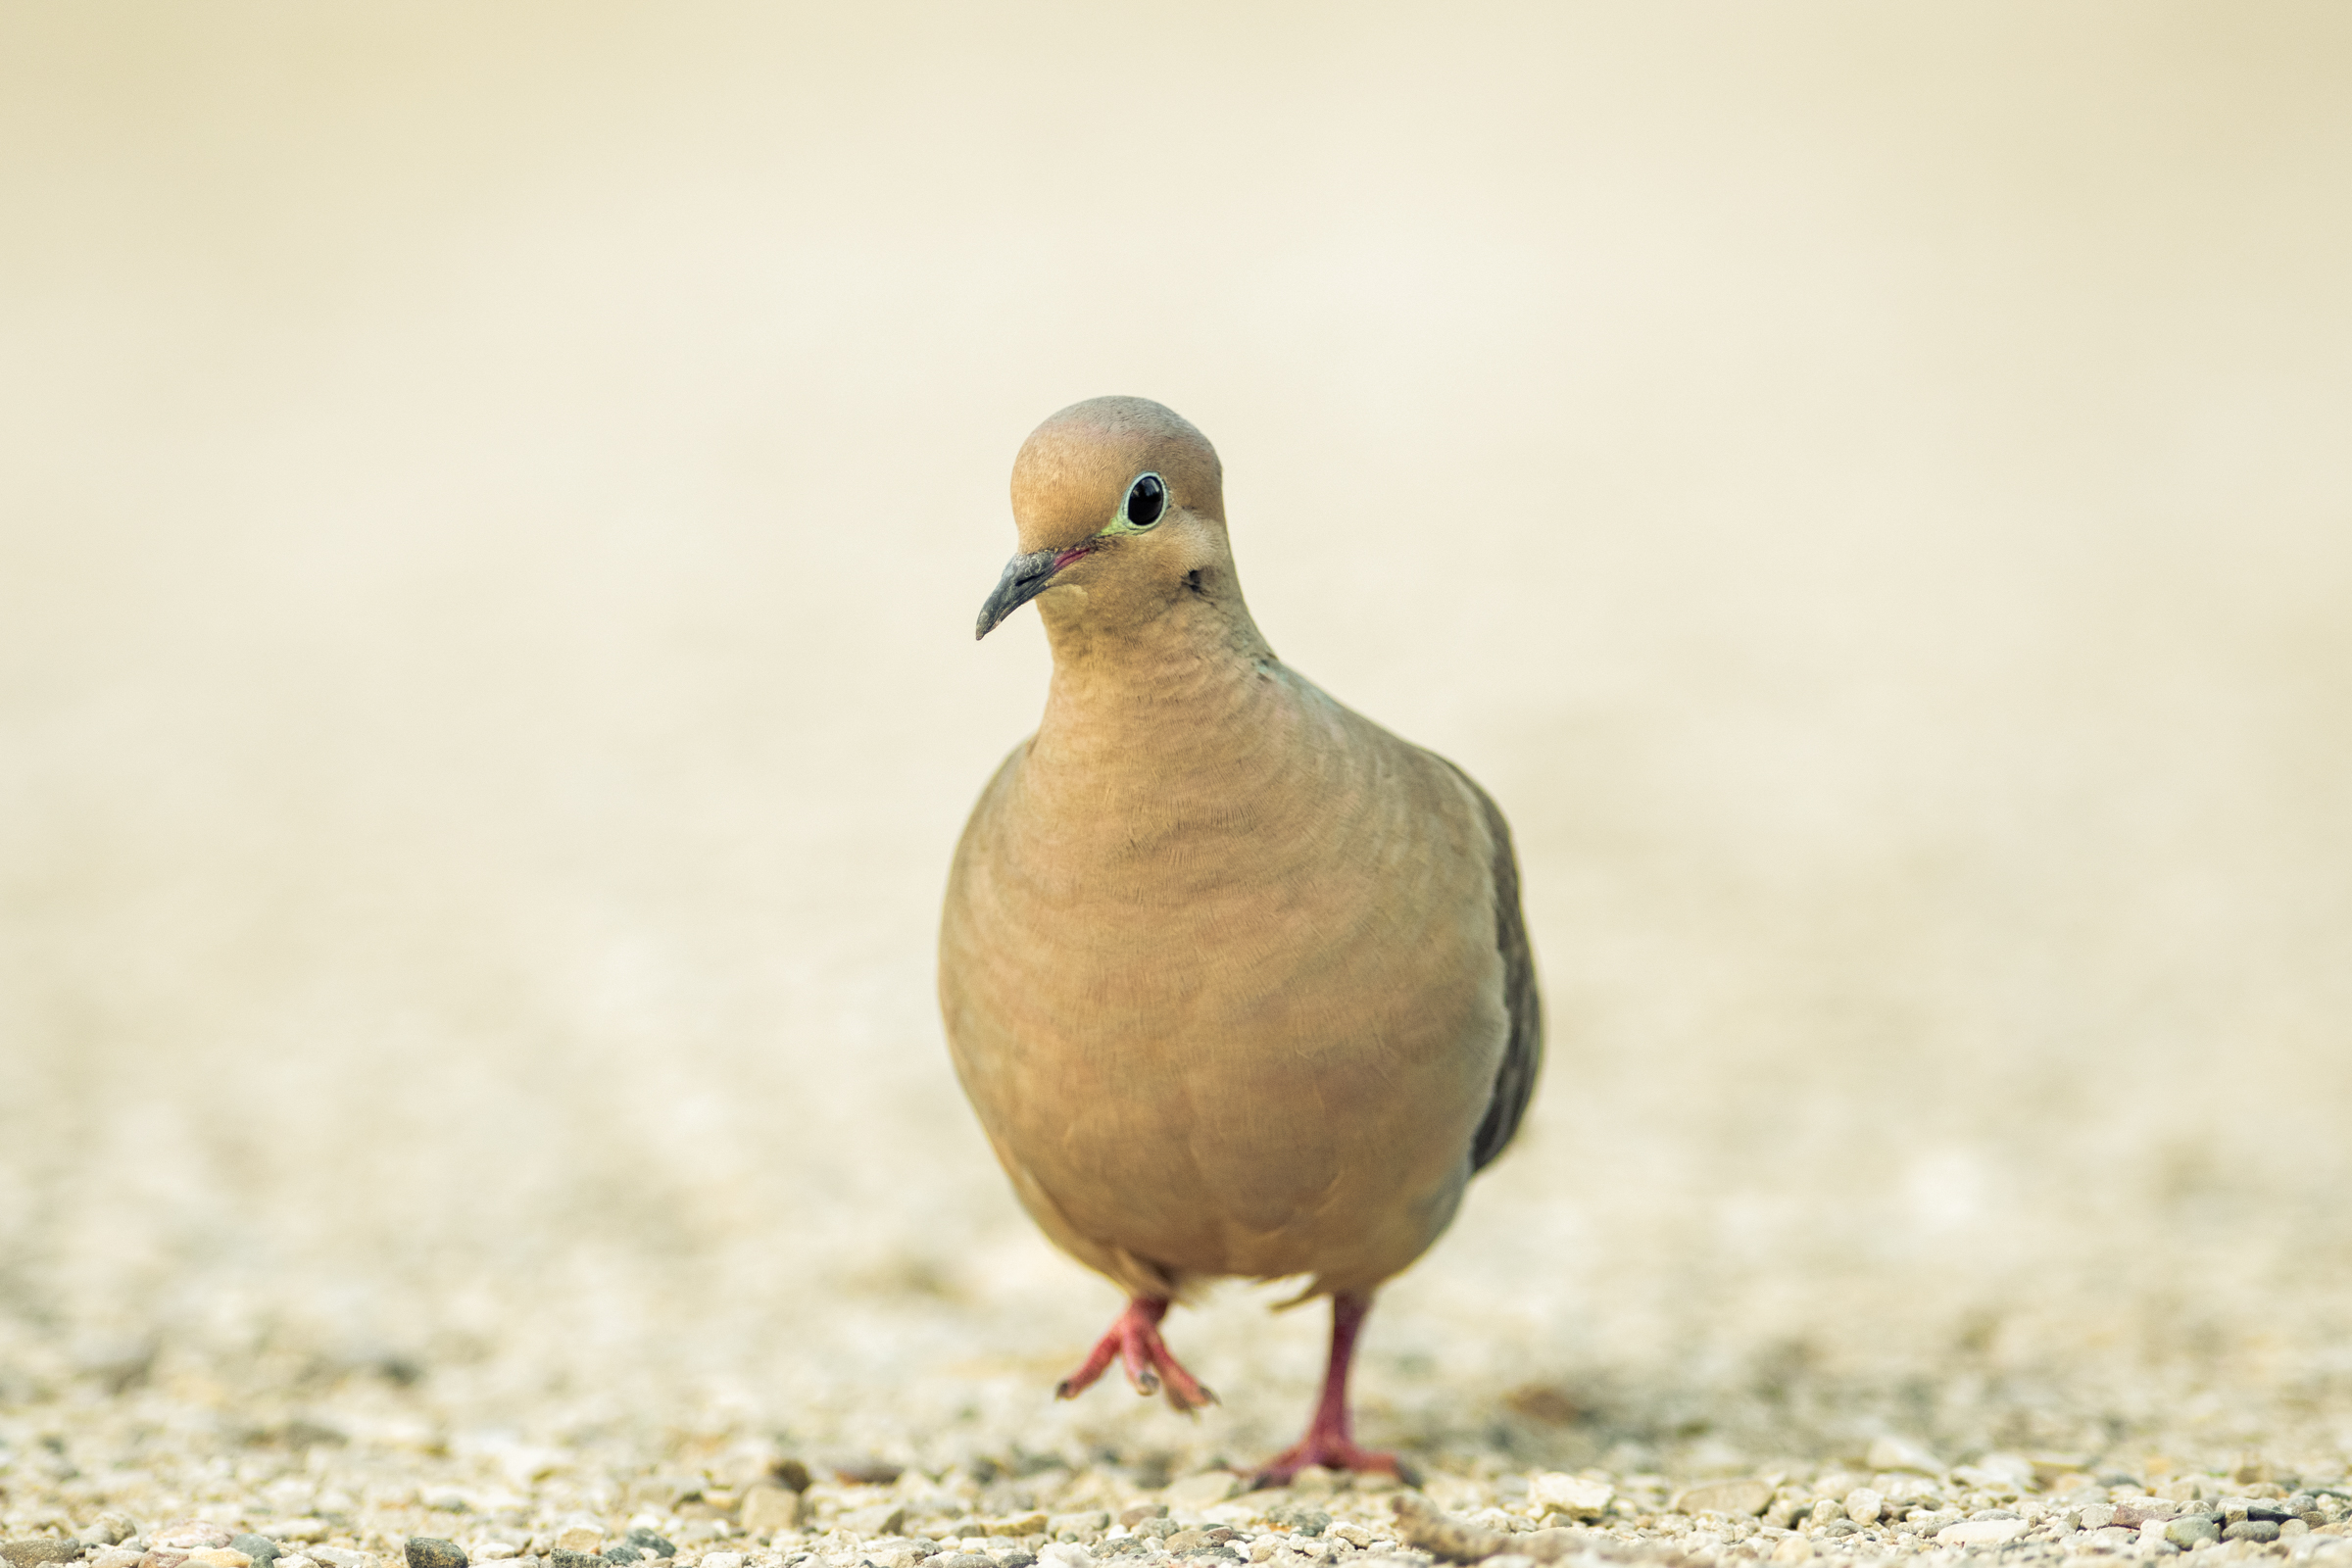 Mourning dove walks on gravel